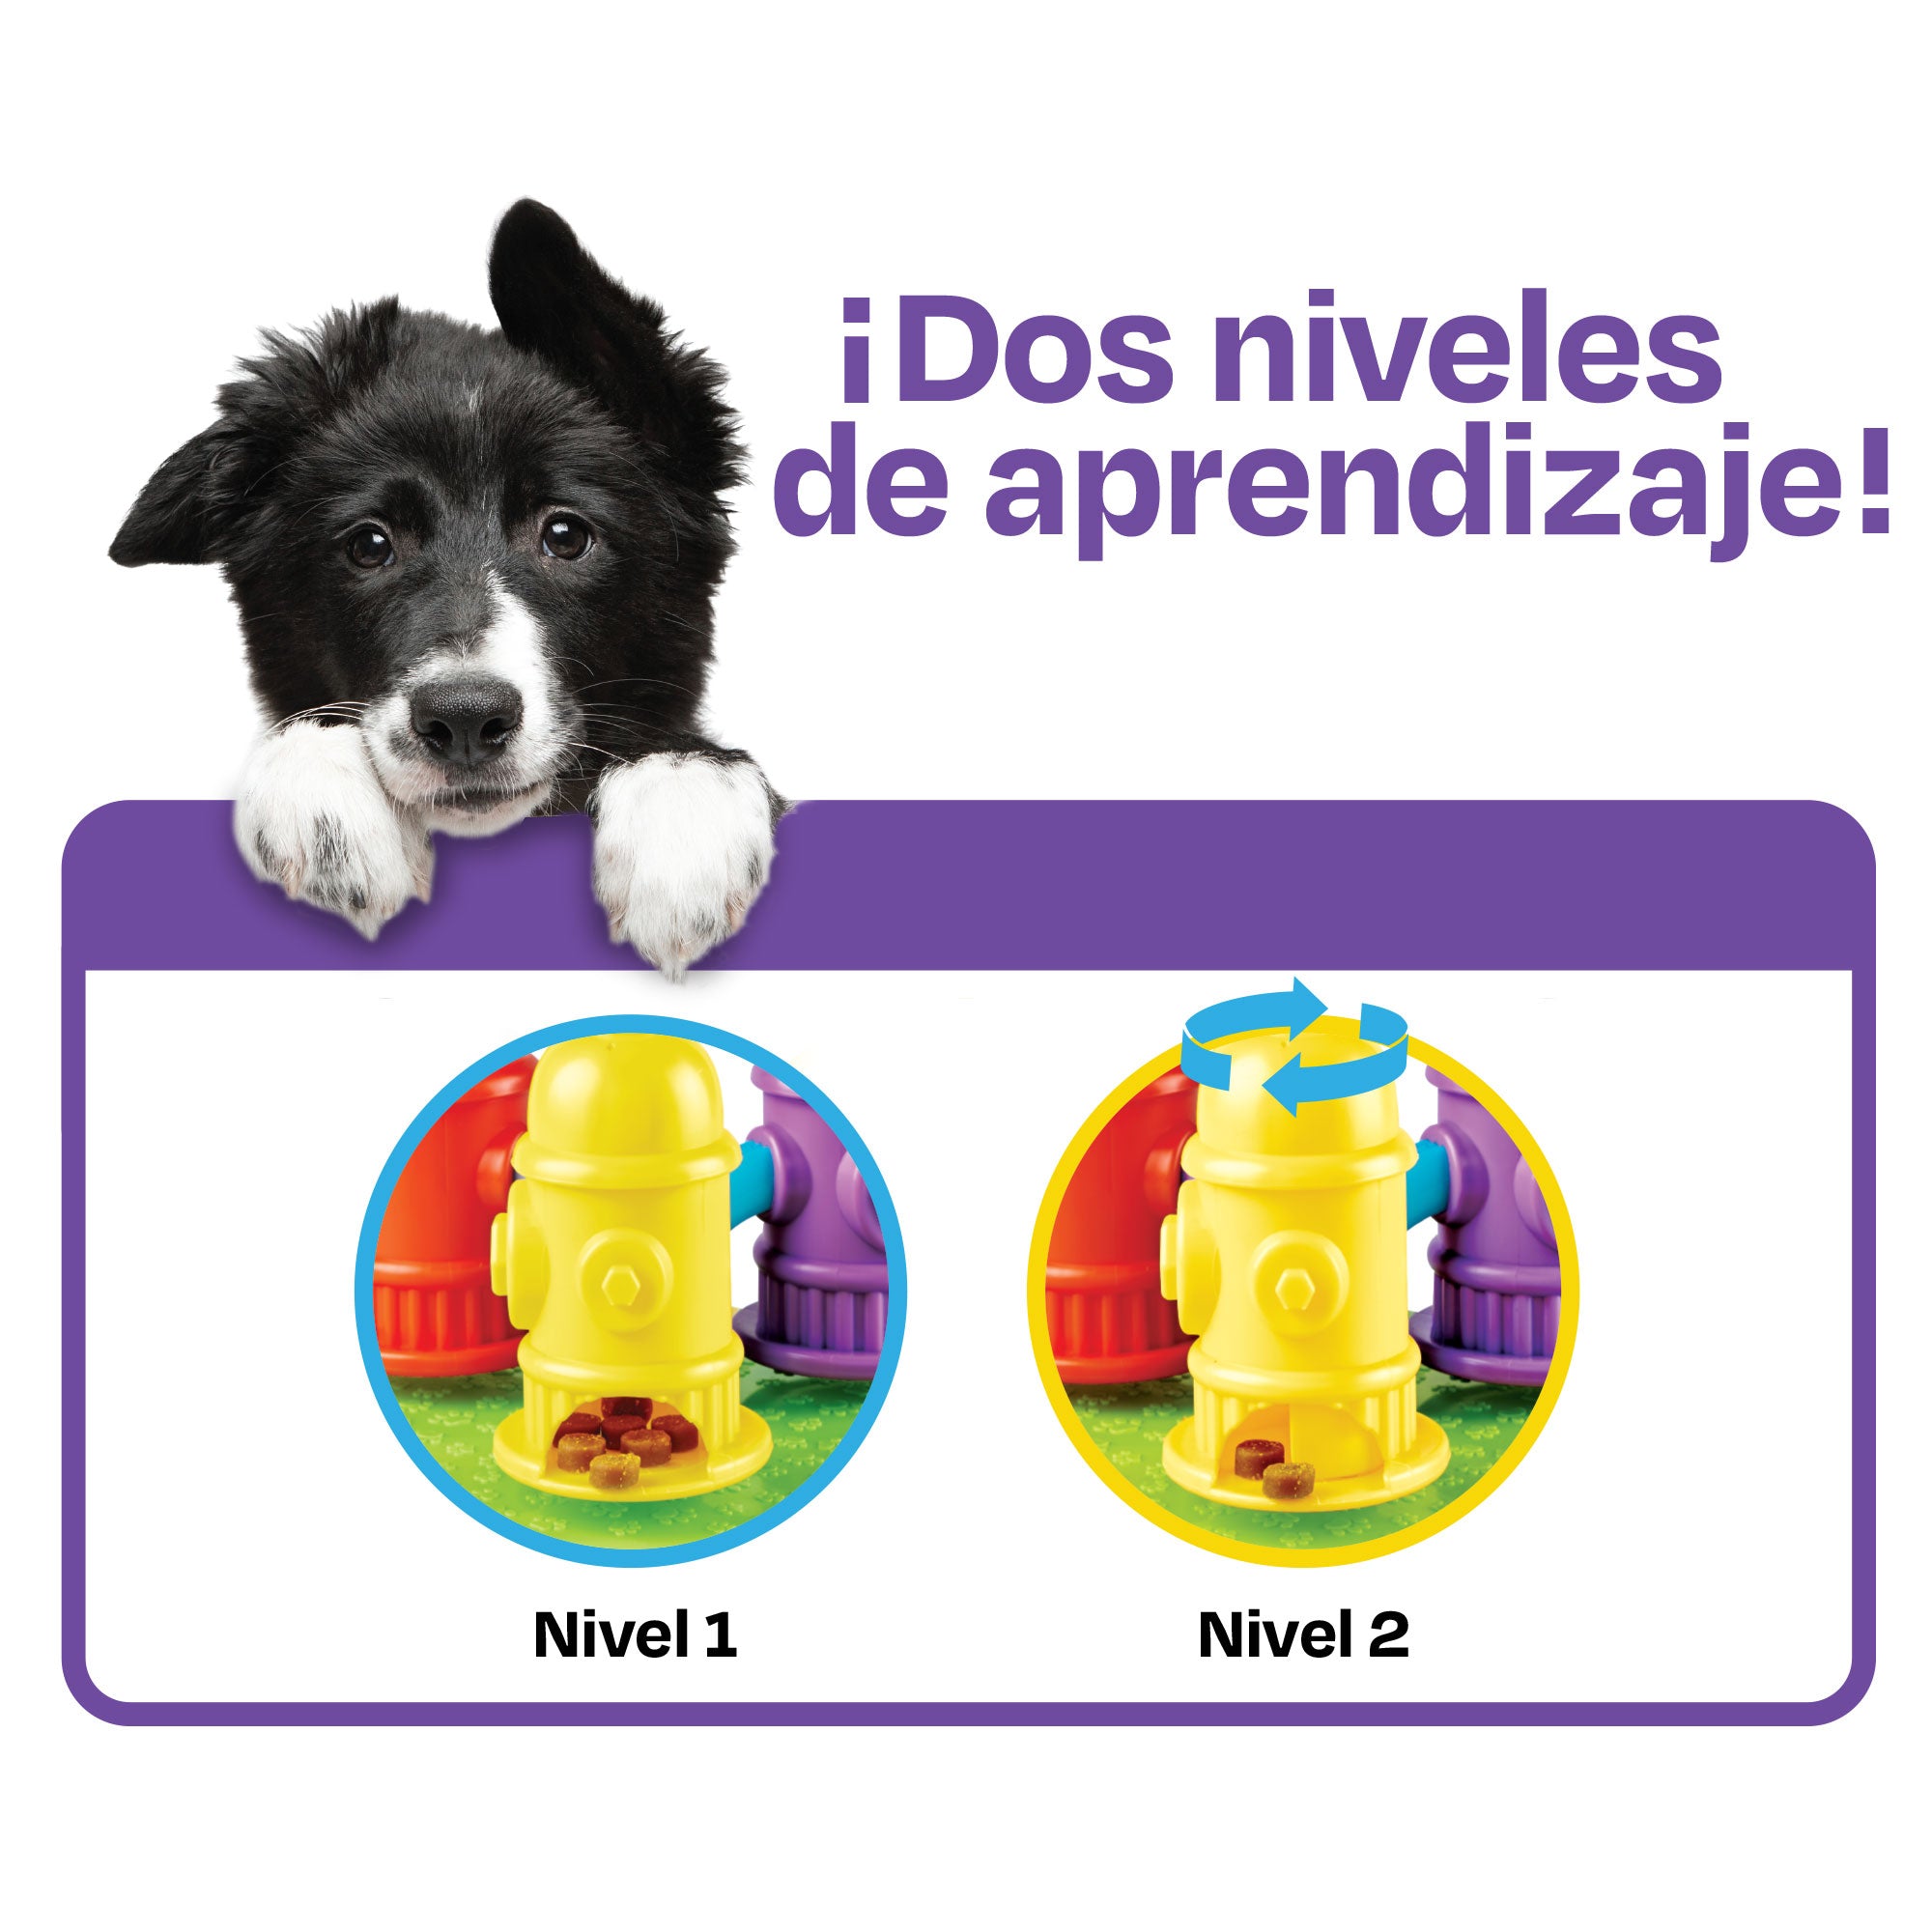 Juguete interactivo para perros Spinning Hydrants: estimula su mente y reduce la ansiedad de Brightkins